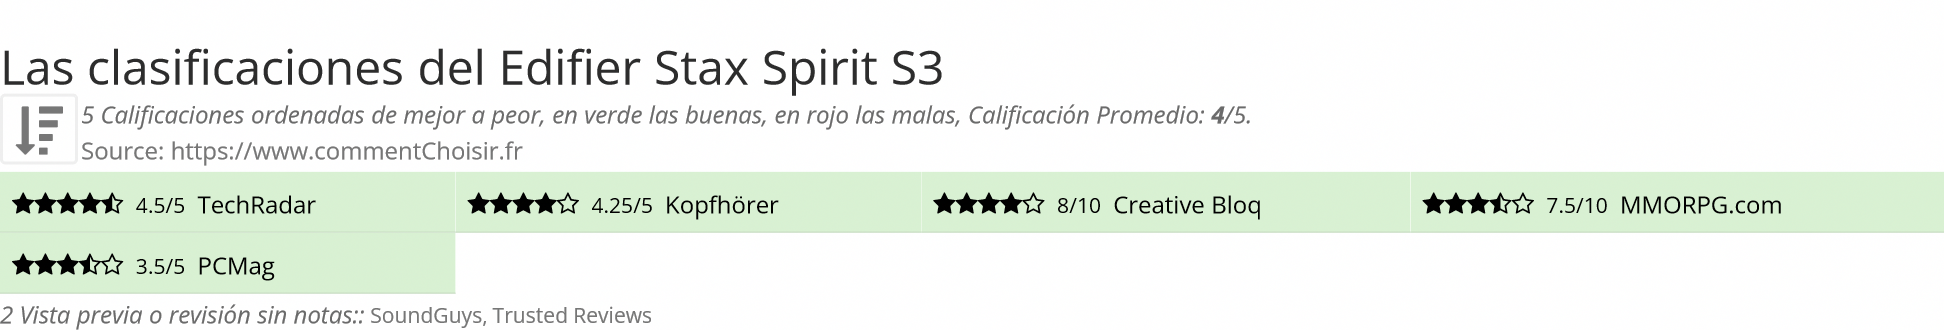 Ratings Edifier Stax Spirit S3